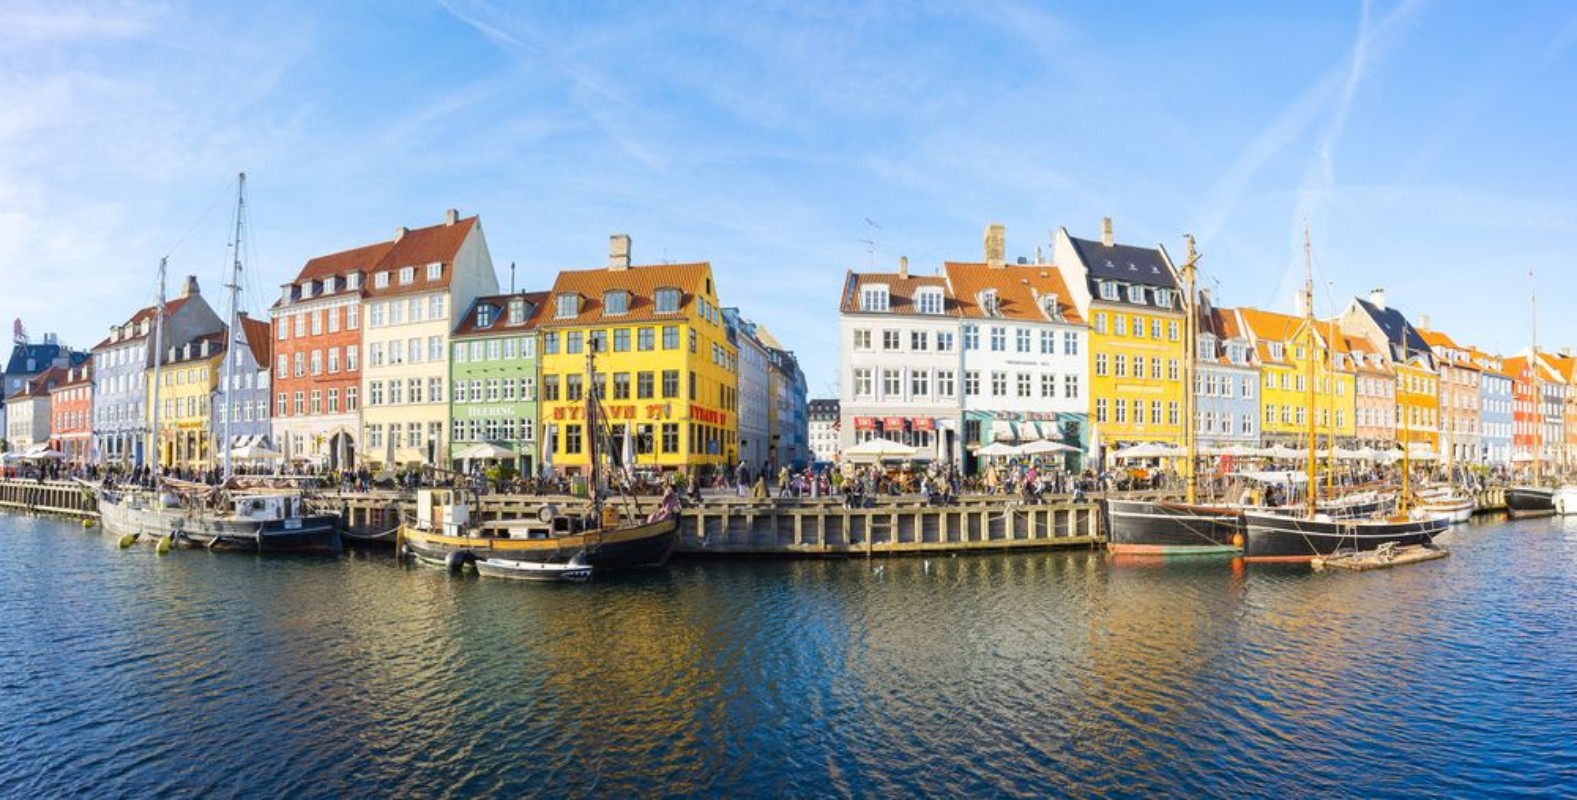 Afbeeldingen van Nyhavn with its picturesque harbor and colorful facades of old houses in Copenhagen Denmark